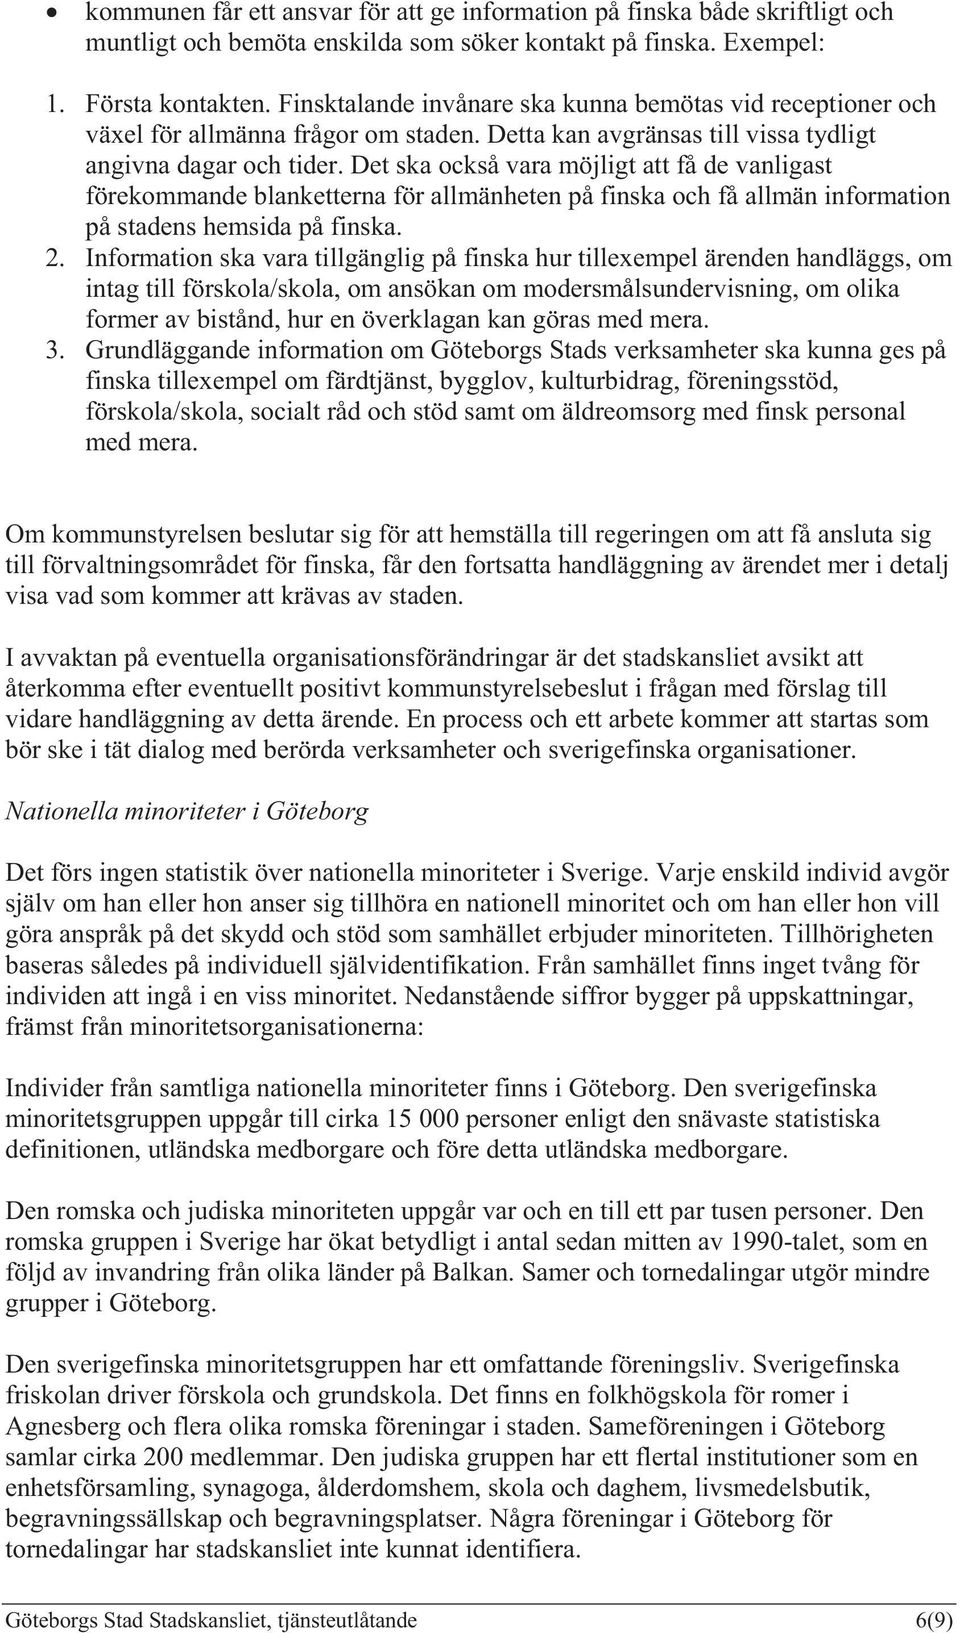 Det ska också vara möjligt att få de vanligast förekommande blanketterna för allmänheten på finska och få allmän information på stadens hemsida på finska. 2.